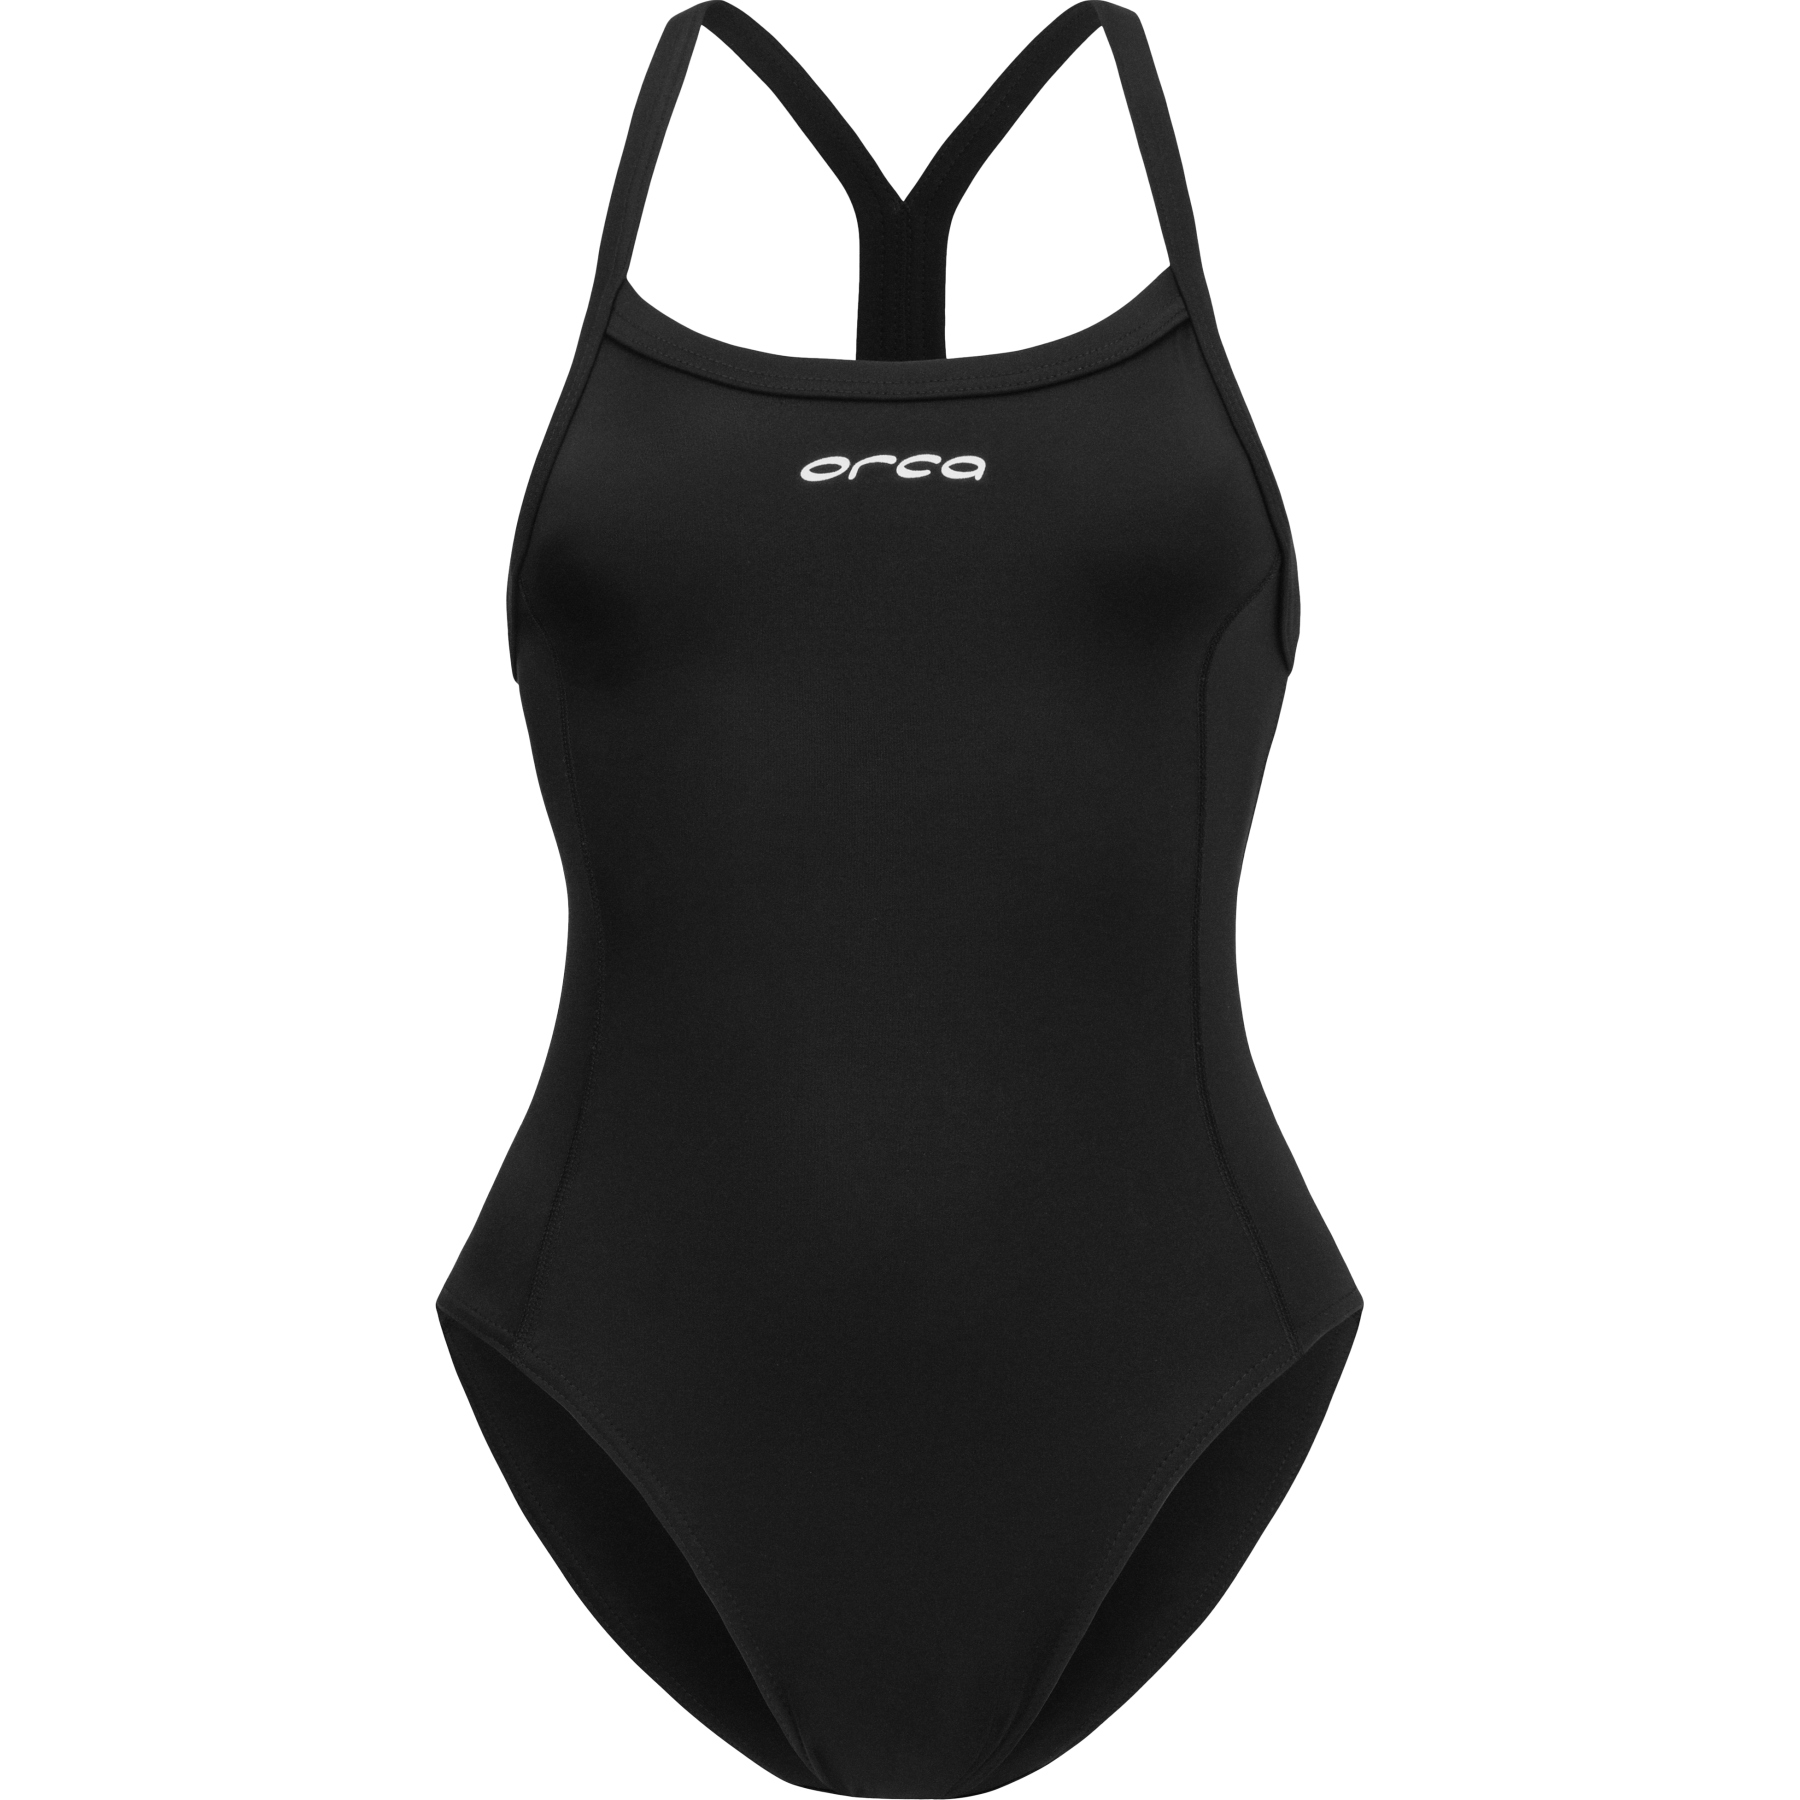 Produktbild von Orca Core Einteiler Thin Strap Badeanzug Damen - schwarz